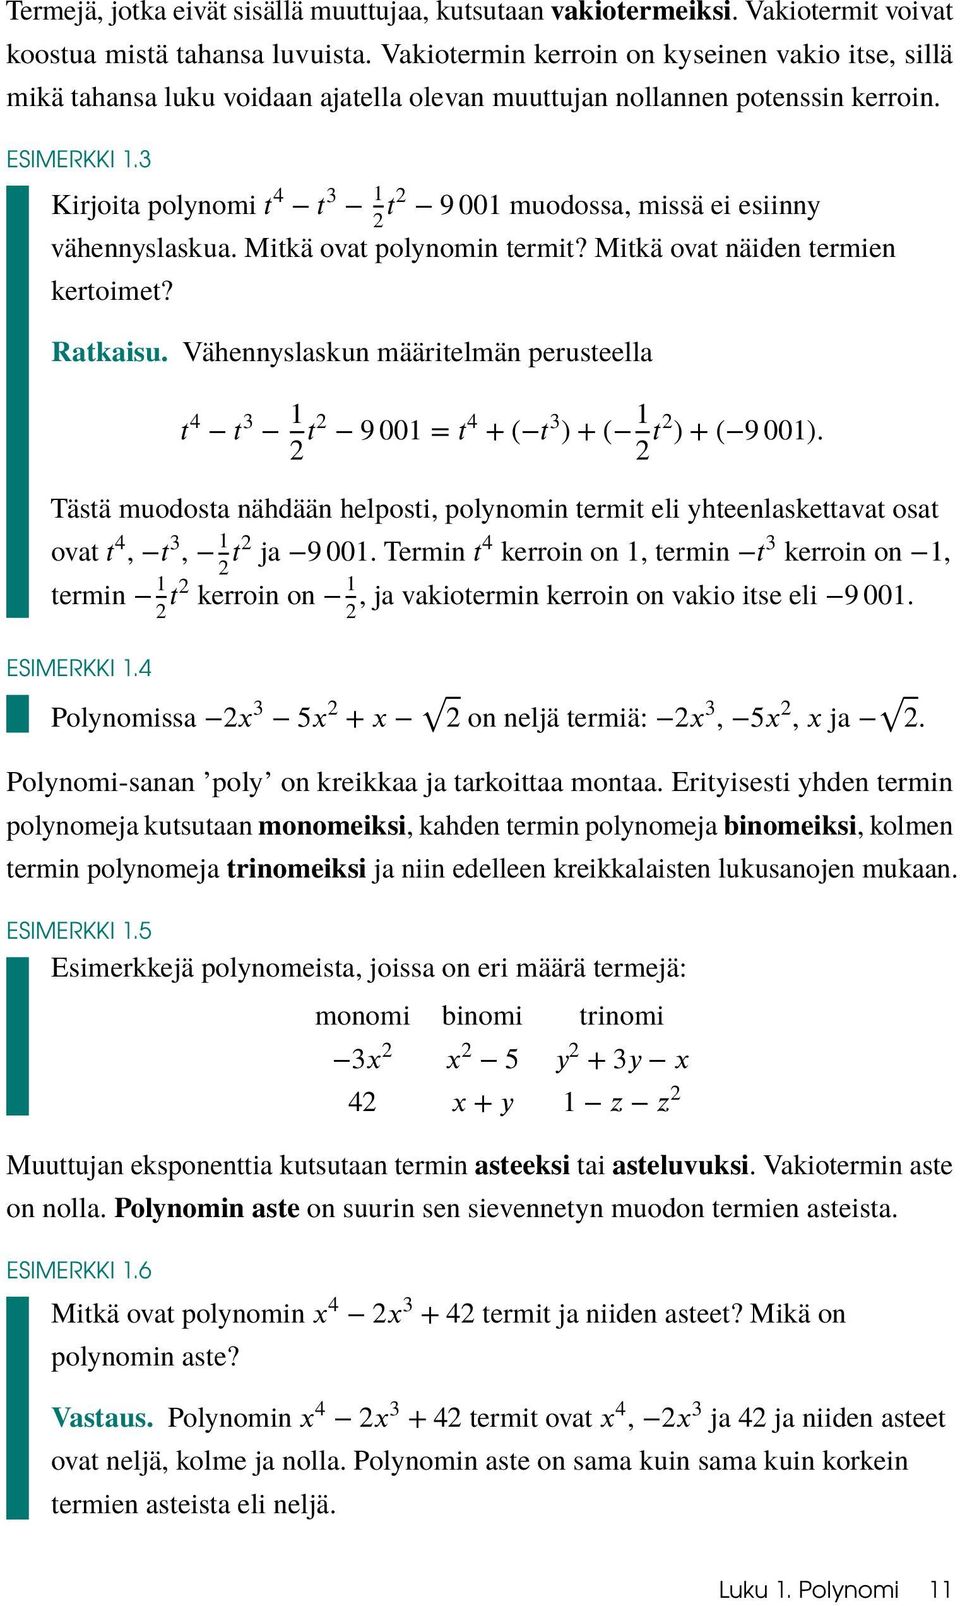 3 Kirjoita polynomi muodossa, missä ei esiinny vähennyslaskua. Mitkä ovat polynomin termit? Mitkä ovat näiden termien kertoimet? Ratkaisu.